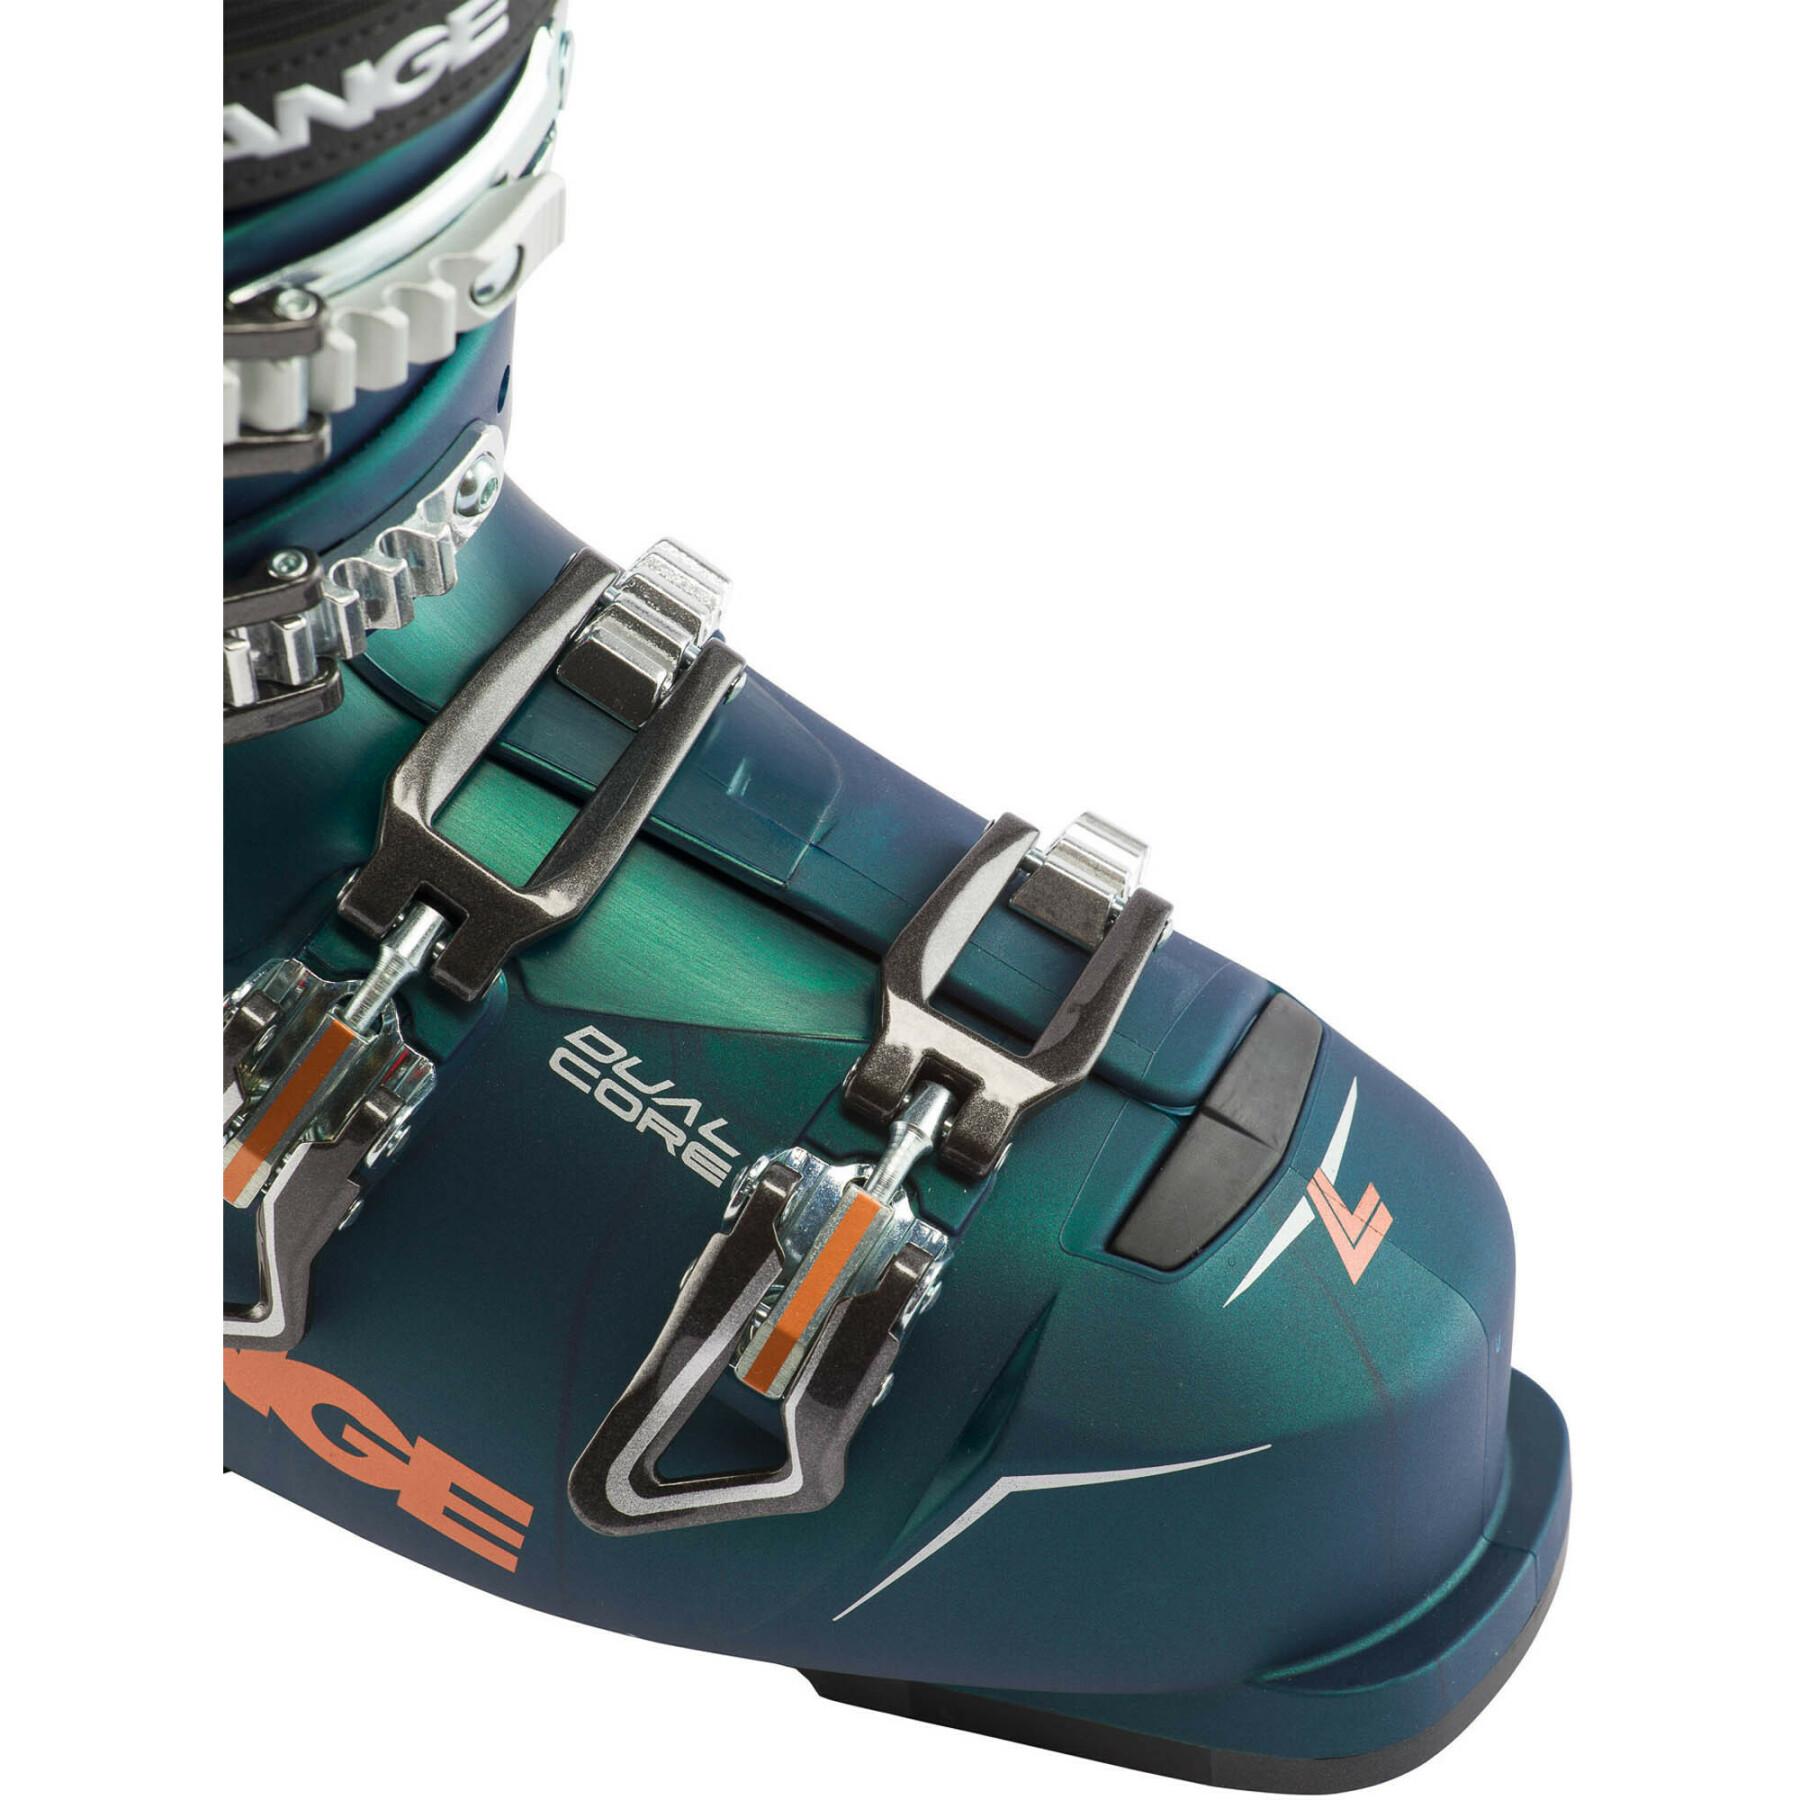 Botas de esquí para mujer Lange Lx 90